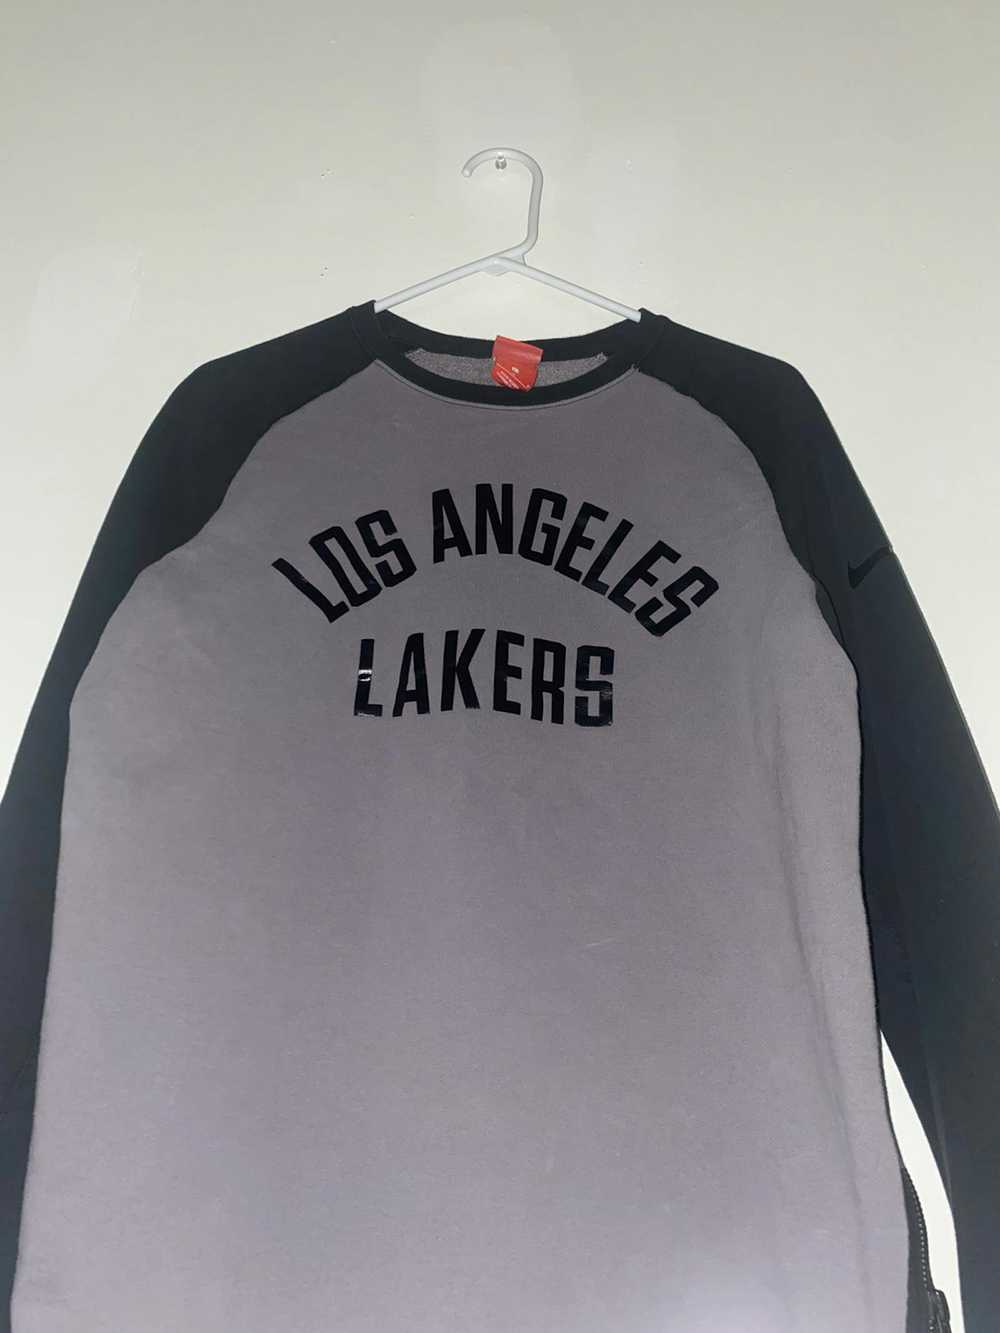 NBA × Nike L.A. Lakers - image 1